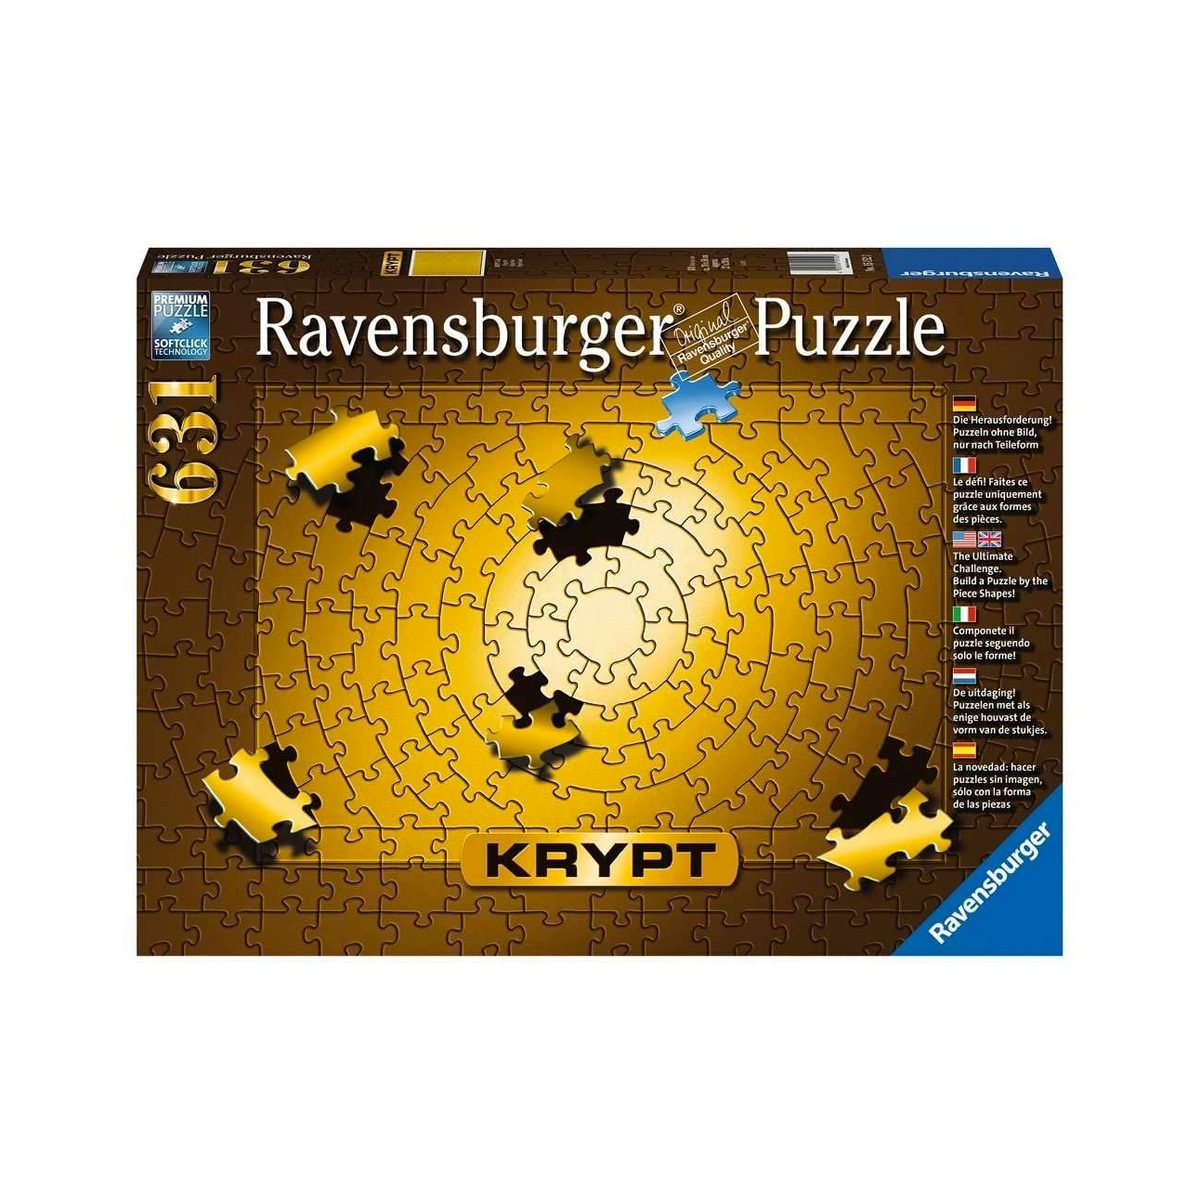 Ravensburger Krypt Puzzle